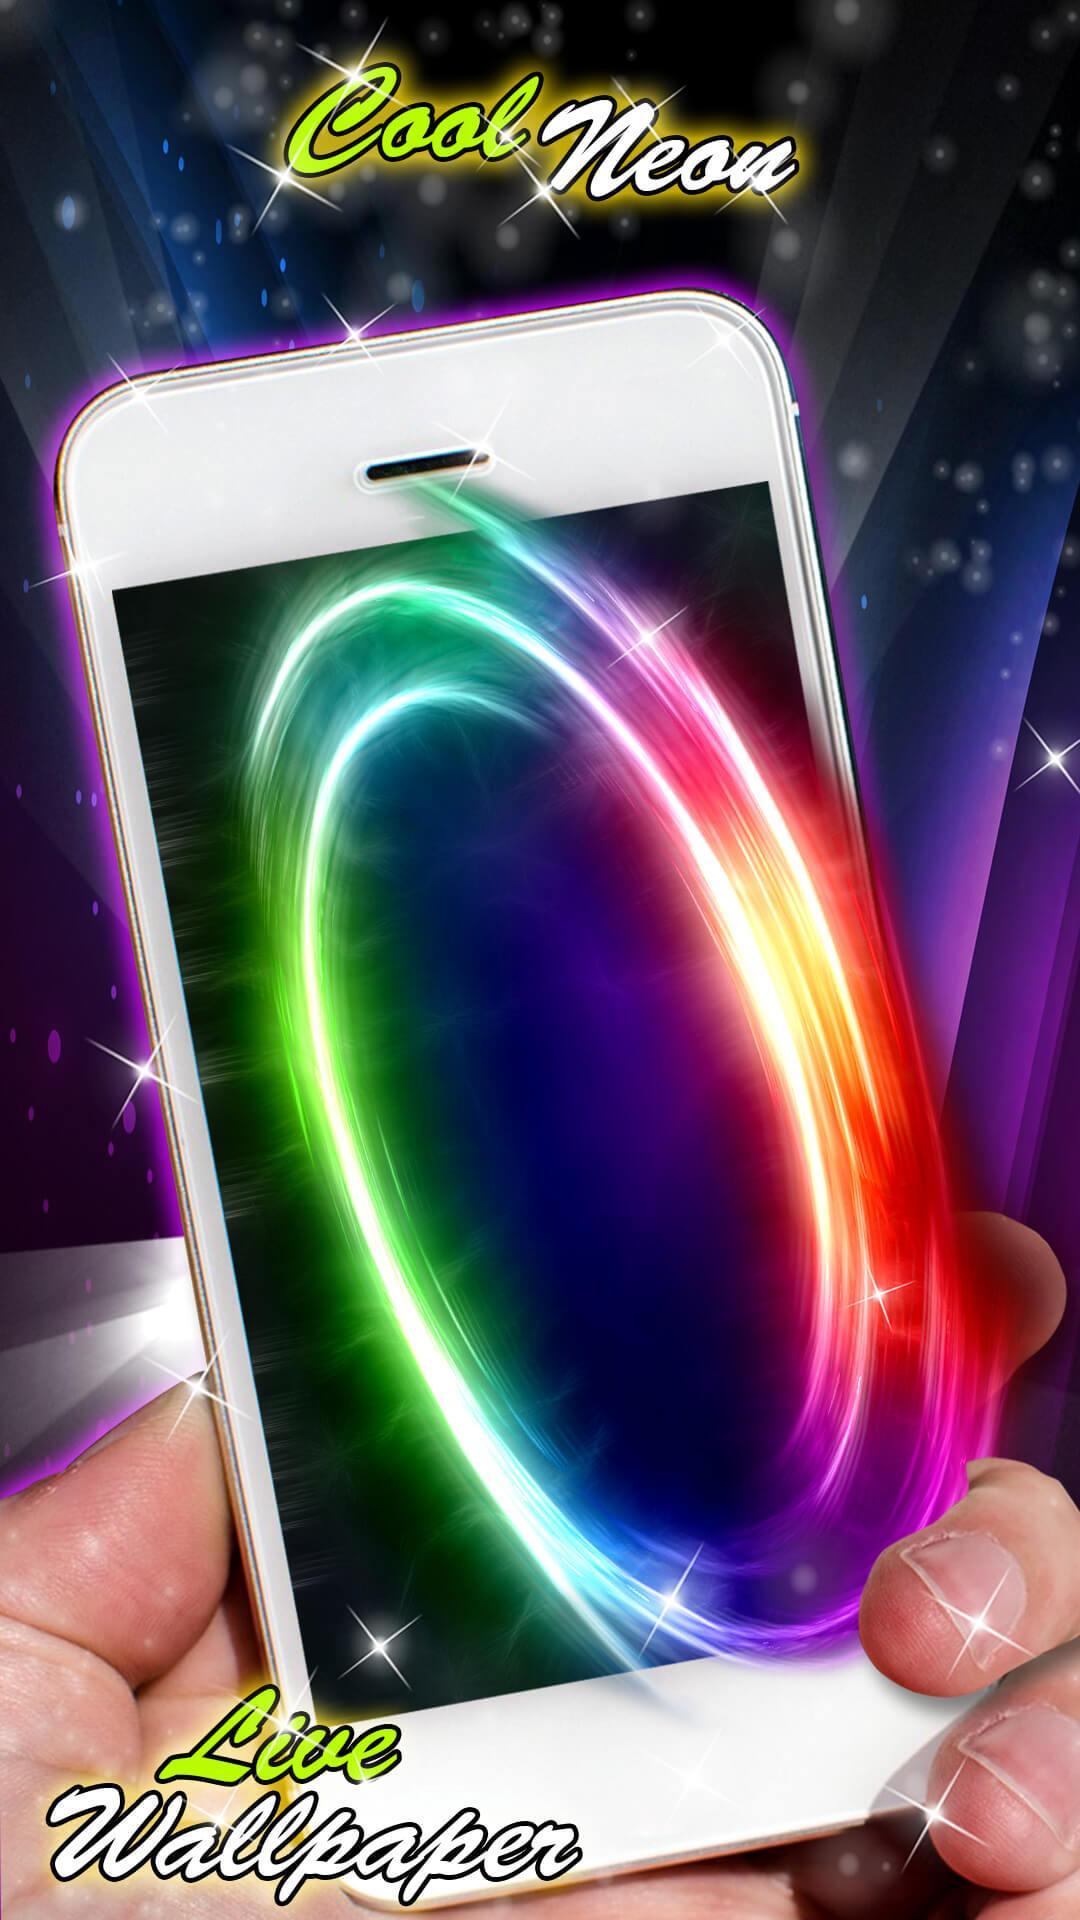 Tải Neon Themes cho Android: Muốn tạo nên phong cách riêng cho điện thoại Android của bạn? Chọn ngay Neon Themes! Thiết kế độc đáo với ánh sáng neon chói lọi sẽ làm bạn thành trung tâm của mọi cuộc trò chuyện của bạn bè và người thân.